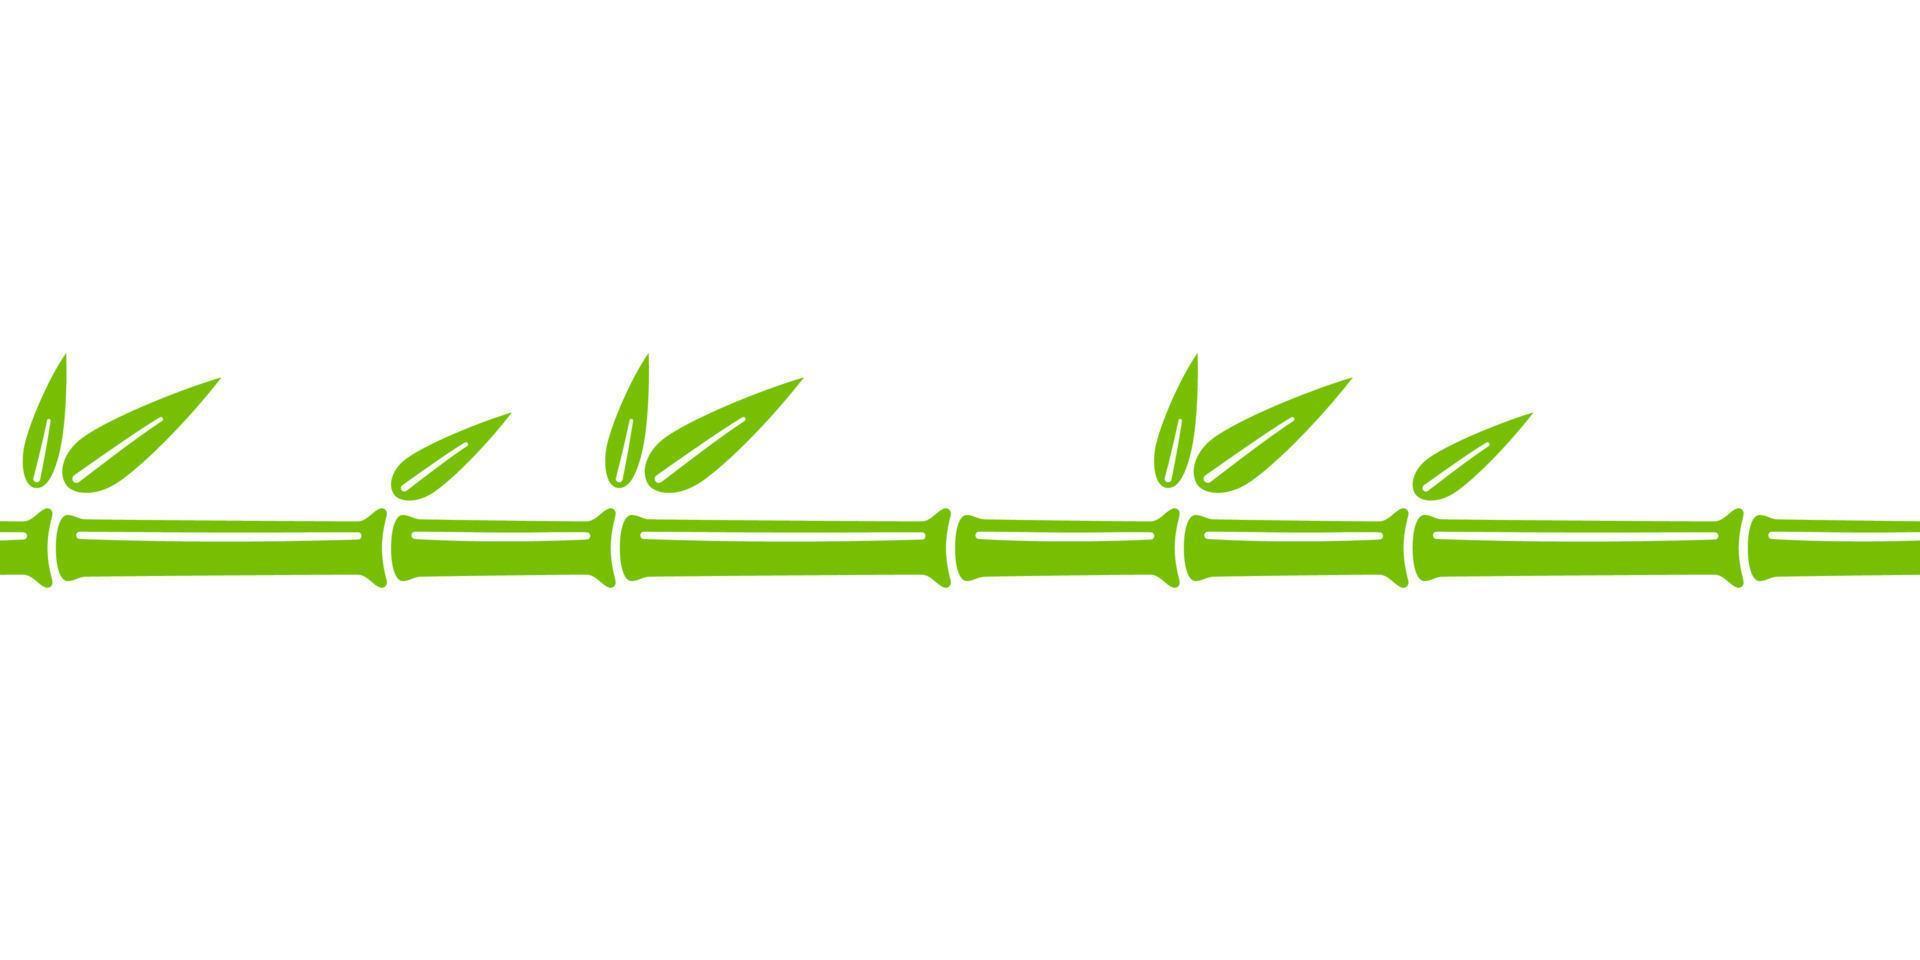 grüne bambusstamm nahtlose linie. bambuszweiggrenze mit blättern. vektorillustration lokalisiert im flachen stil auf weißem hintergrund vektor